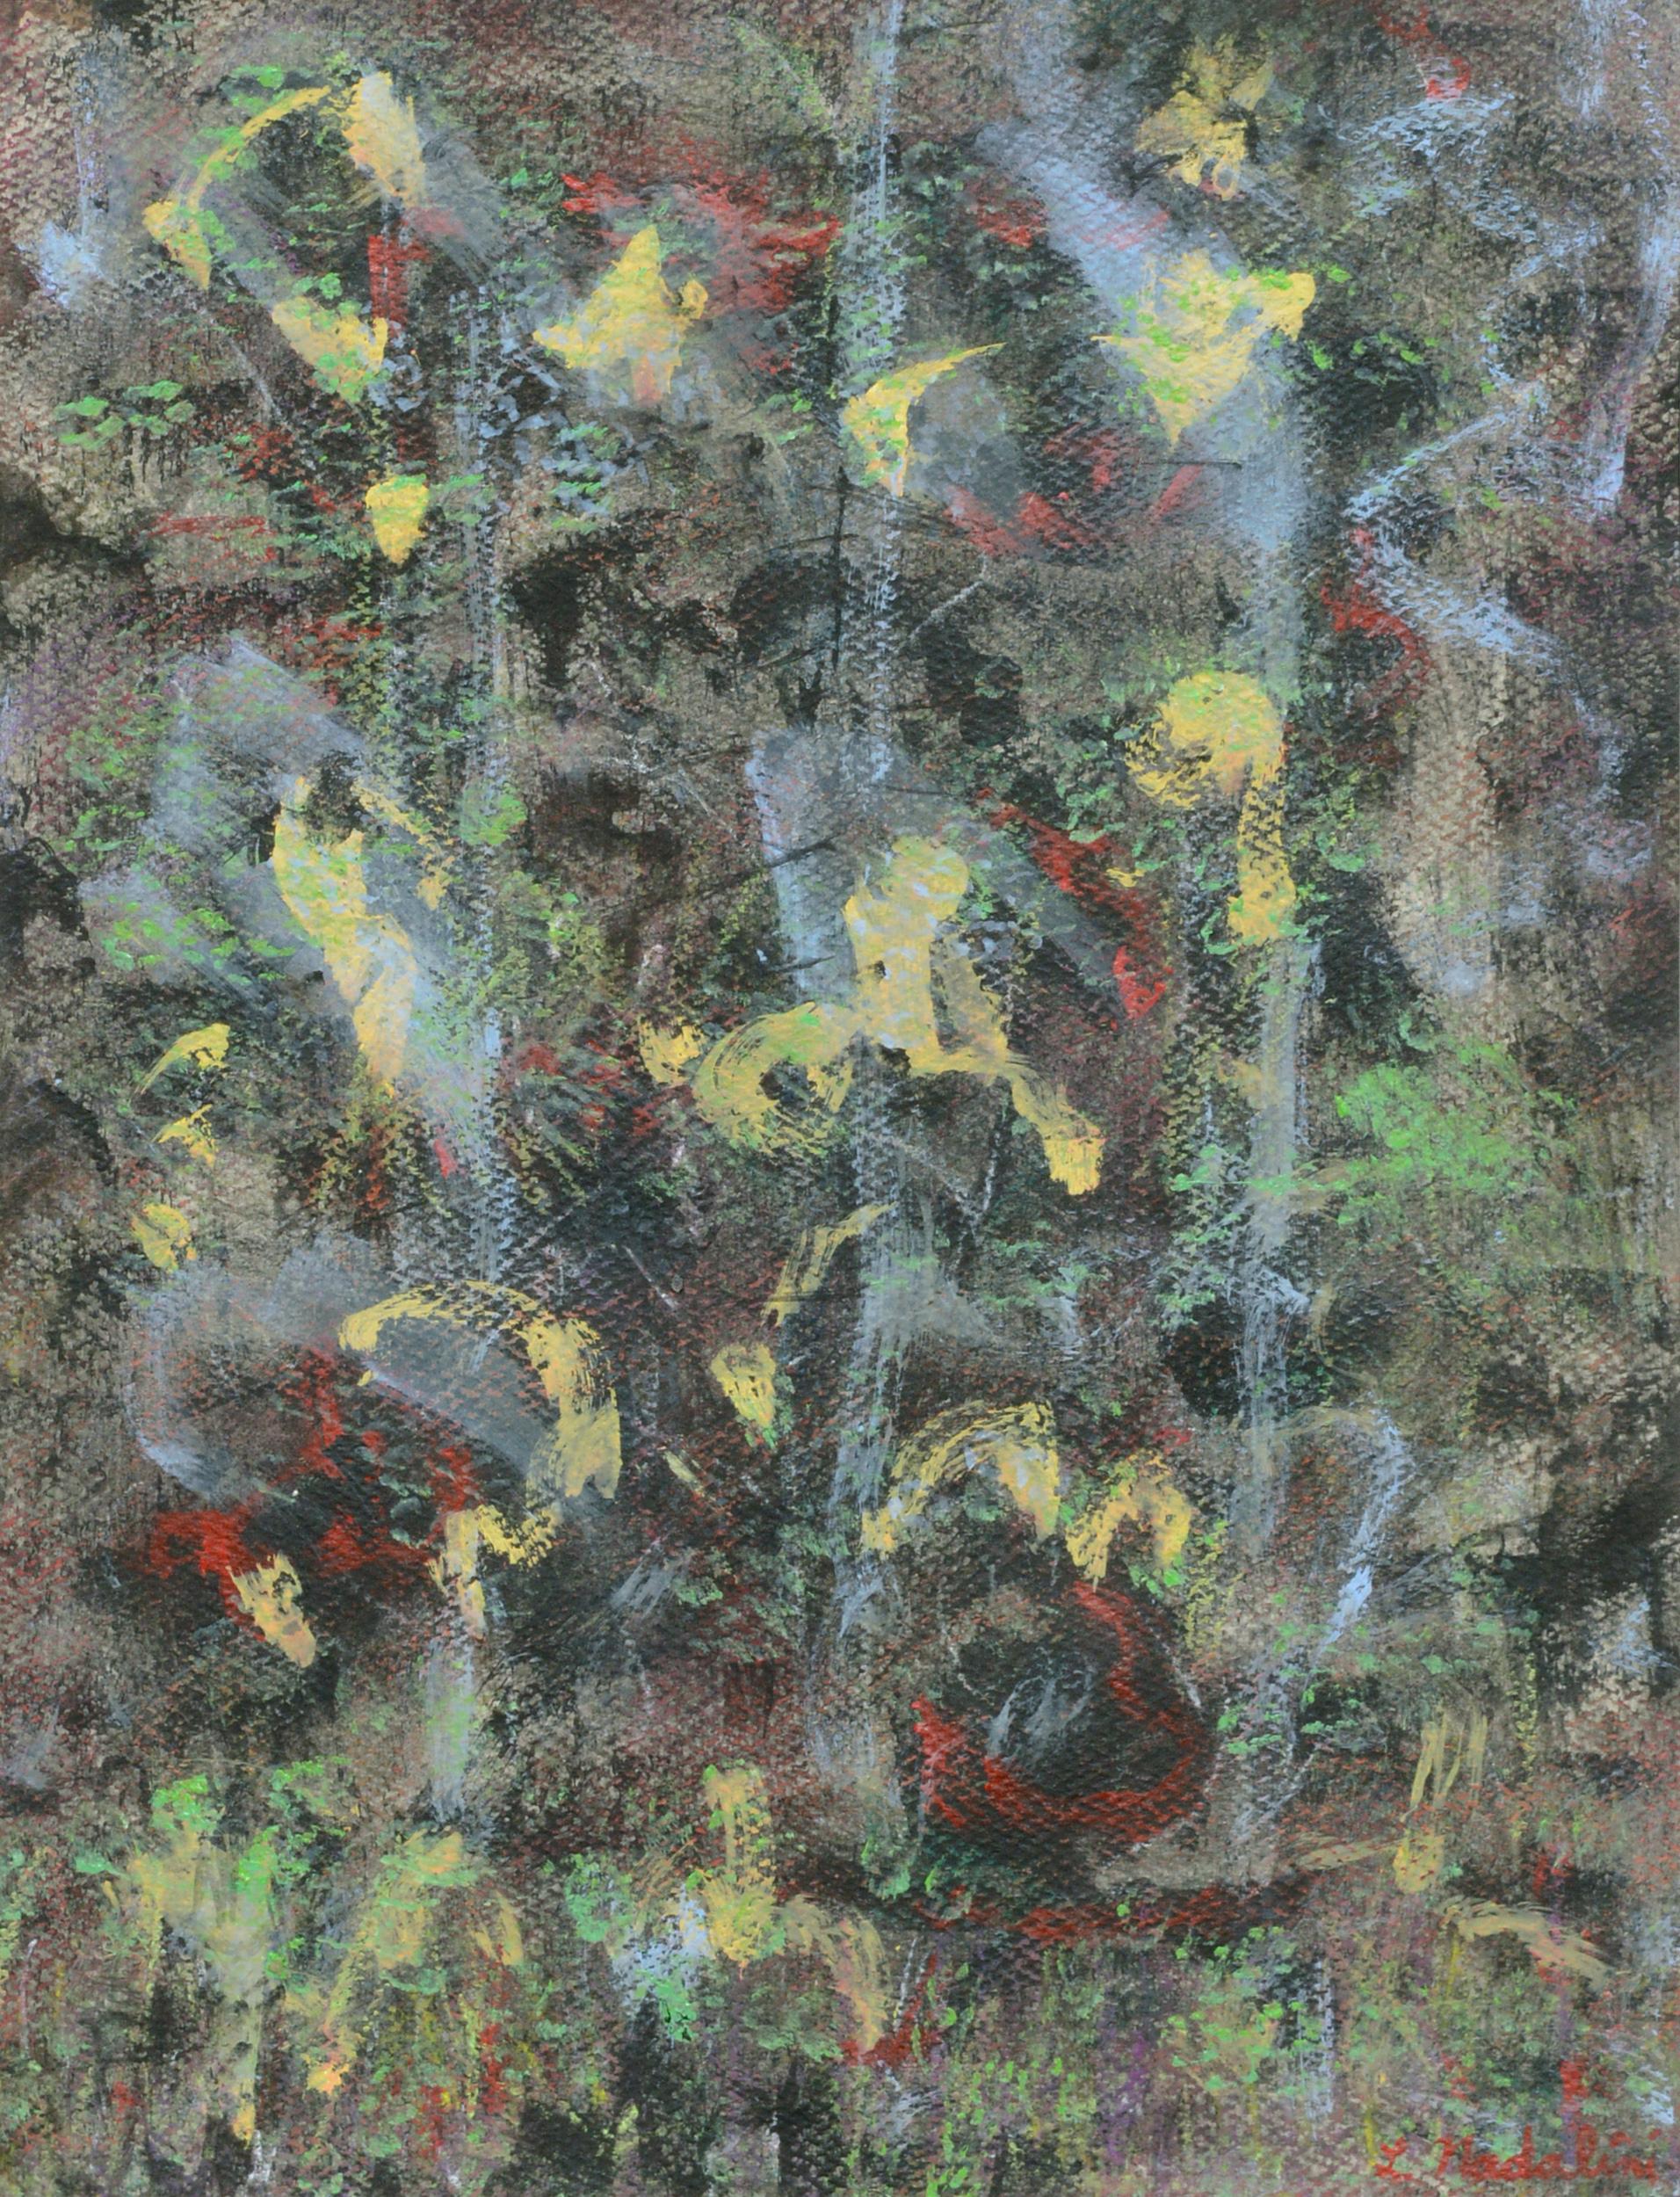 Abstrakte expressionistische Komposition mit Primärfarben, Berkeley, Kalifornien, 1970er Jahre – Painting von Louis Earnest Nadalini